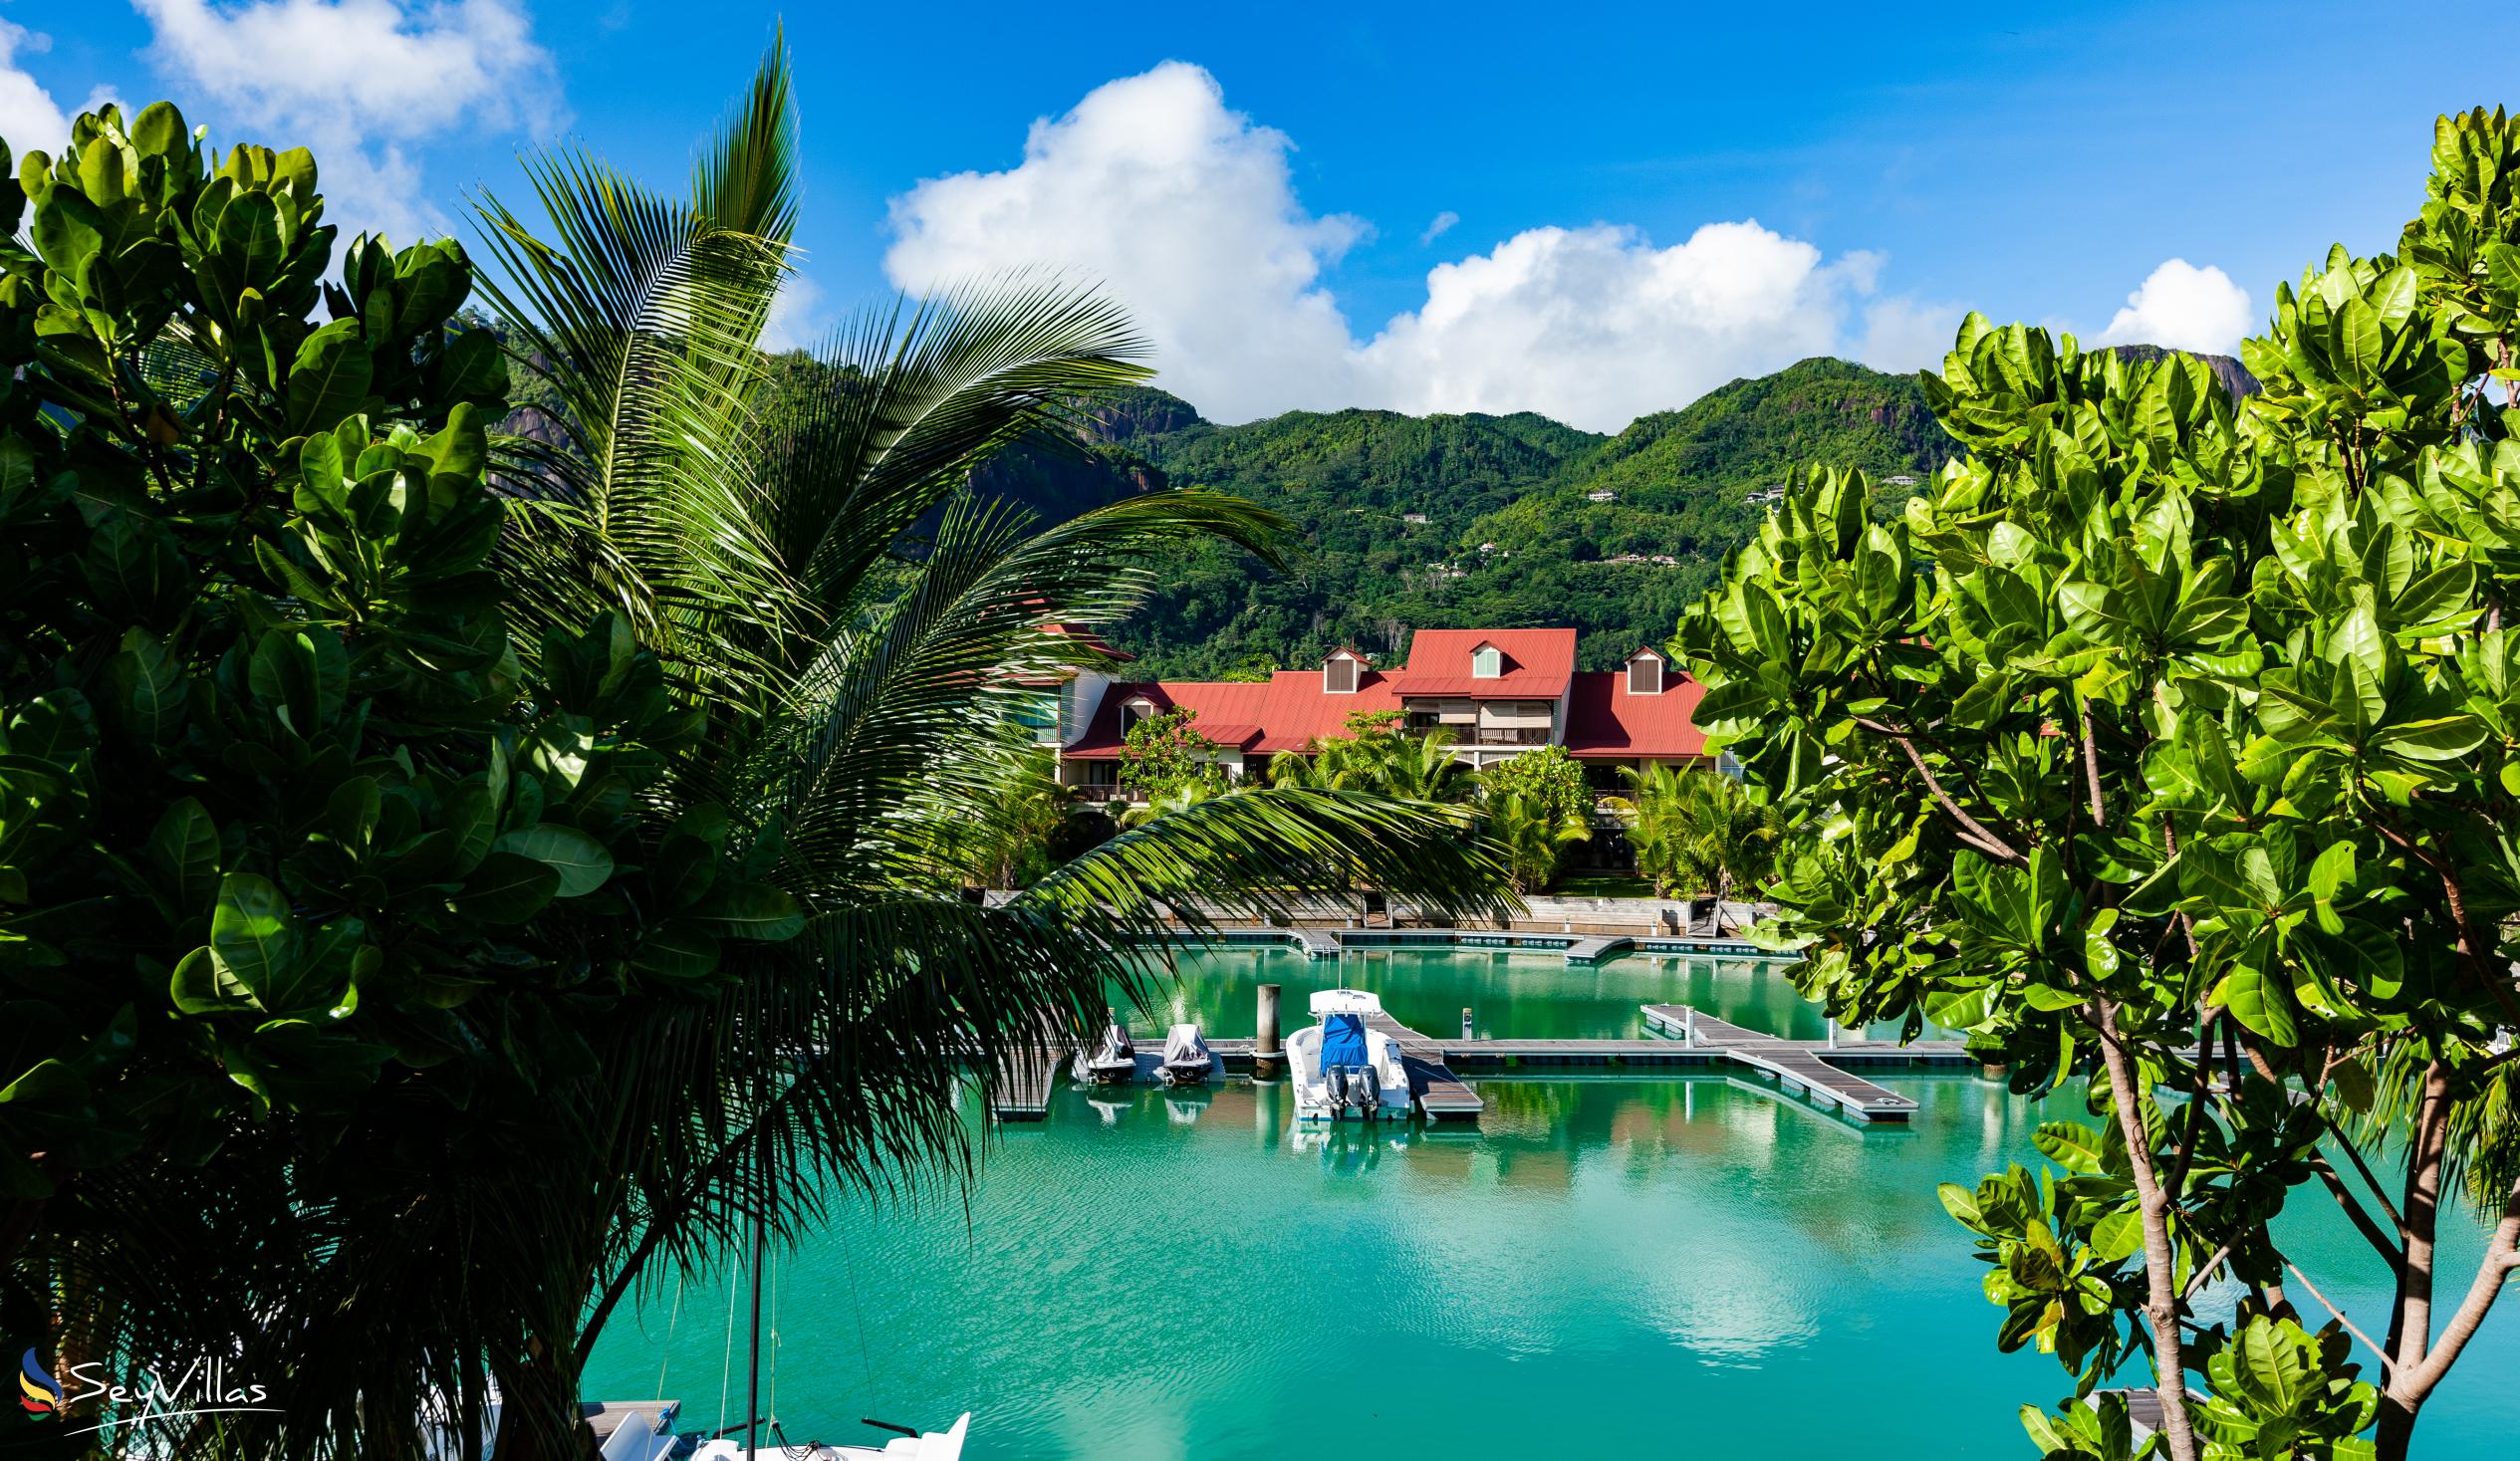 Photo 6: Eden Confort - Location - Mahé (Seychelles)